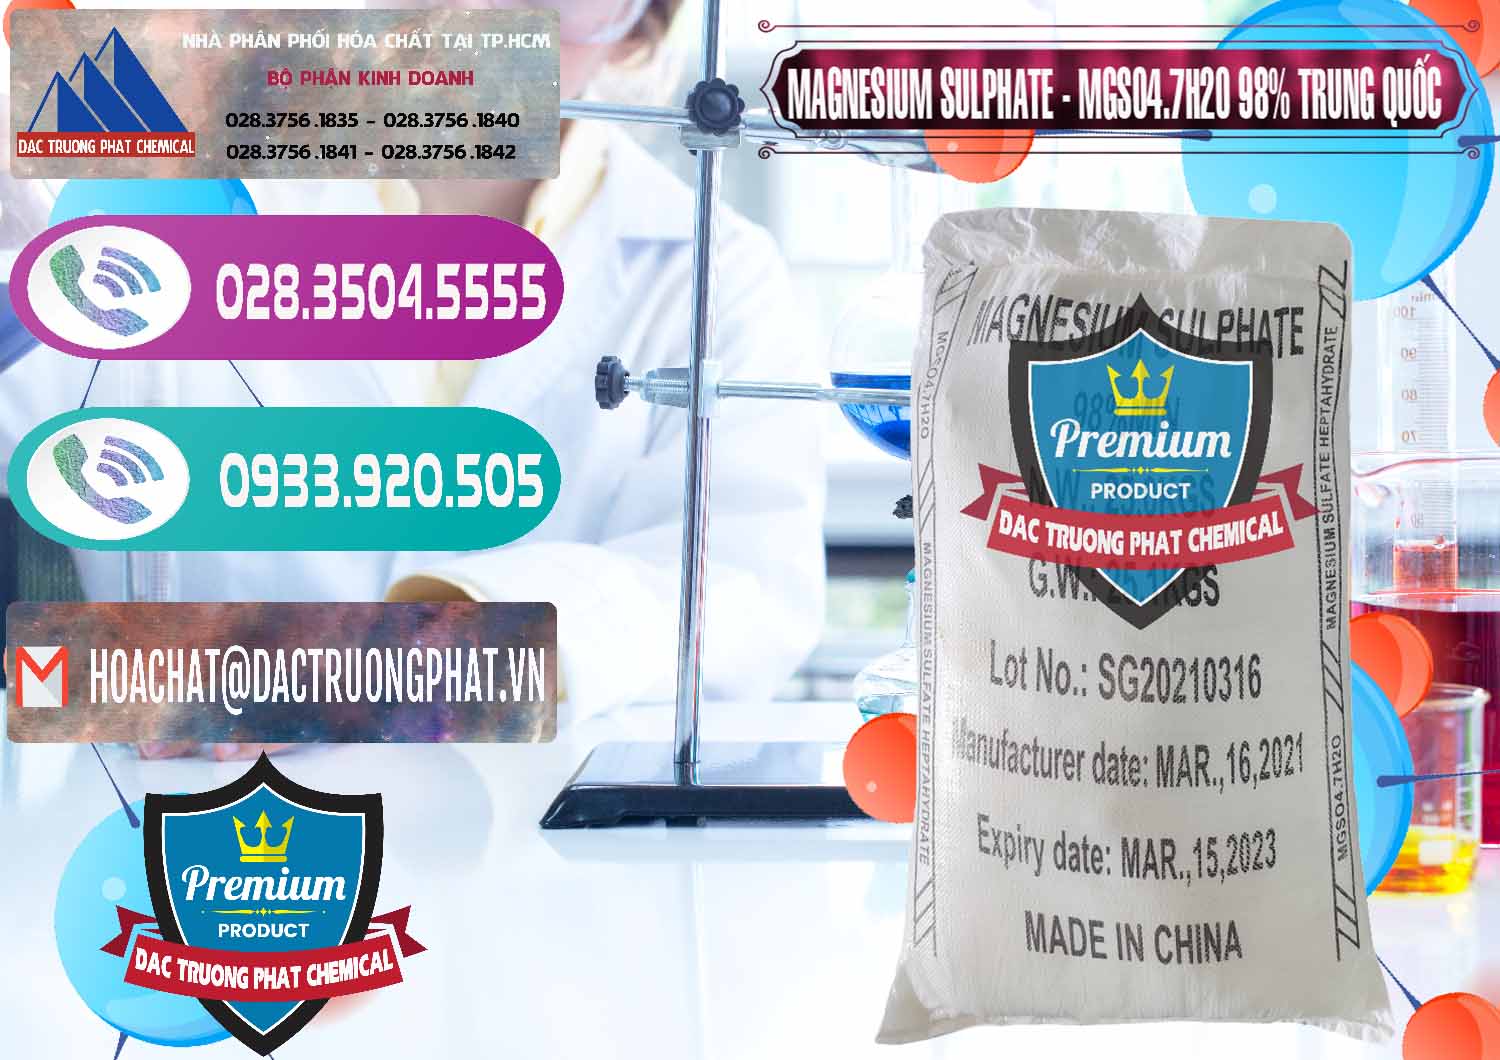 Công ty chuyên kinh doanh & bán MGSO4.7H2O – Magnesium Sulphate 98% Trung Quốc China - 0229 - Cty phân phối _ kinh doanh hóa chất tại TP.HCM - hoachatxulynuoc.com